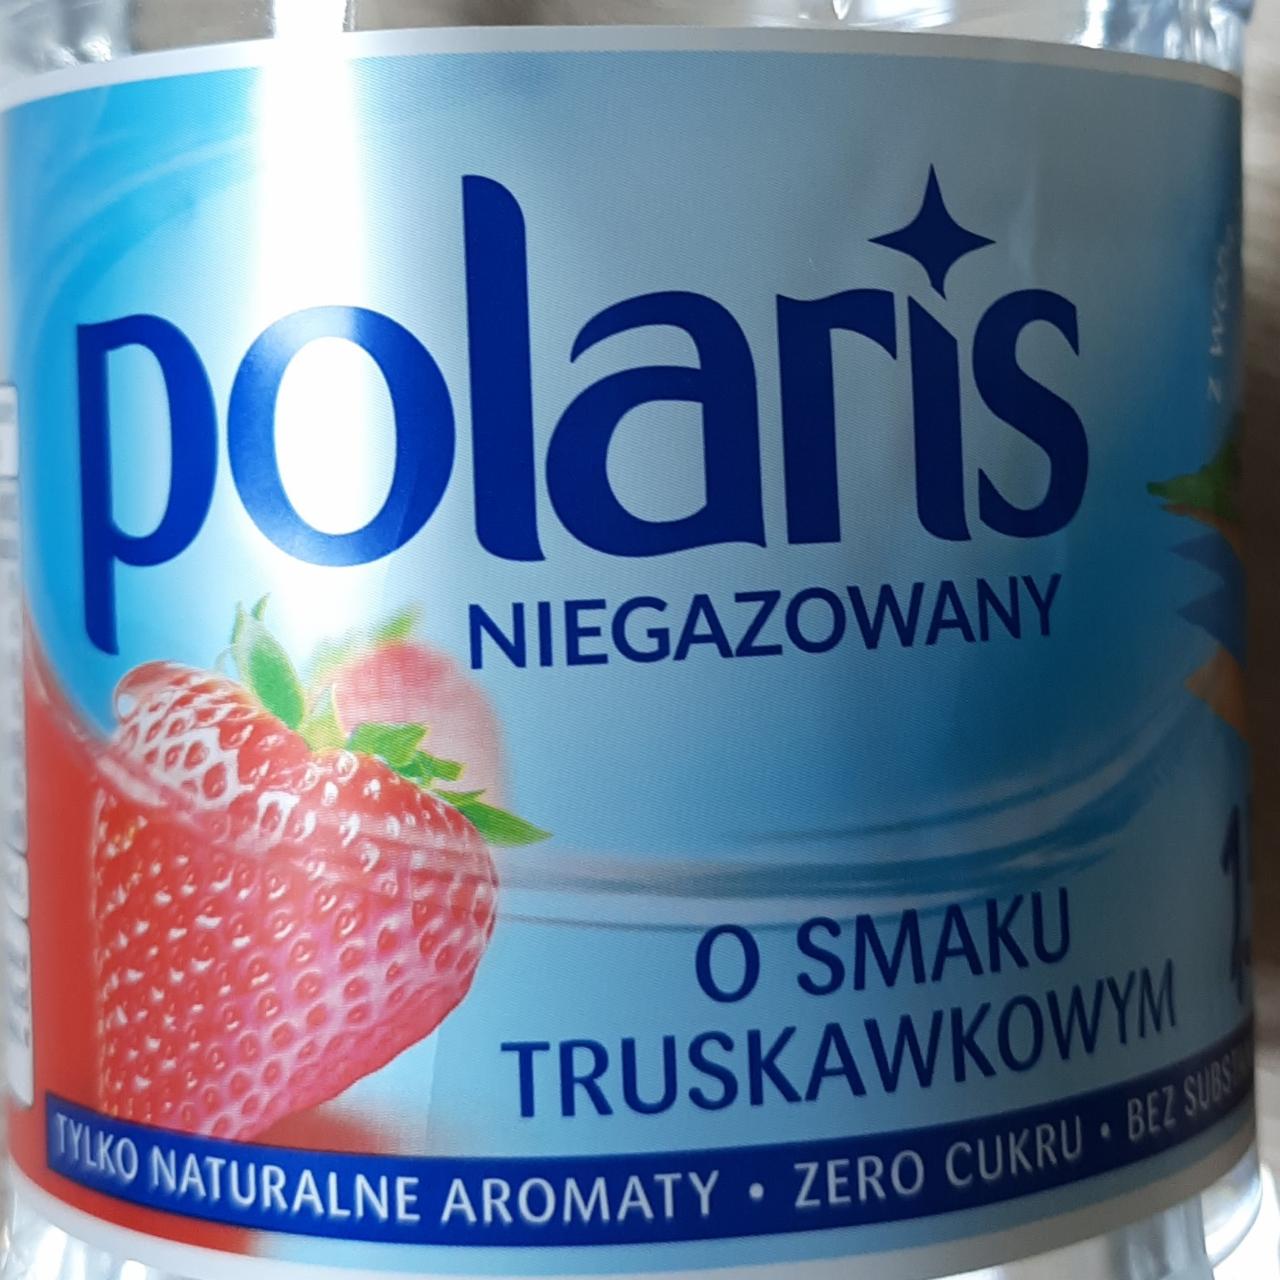 Zdjęcia - Polaris niegazowany o smaku truskawkowym